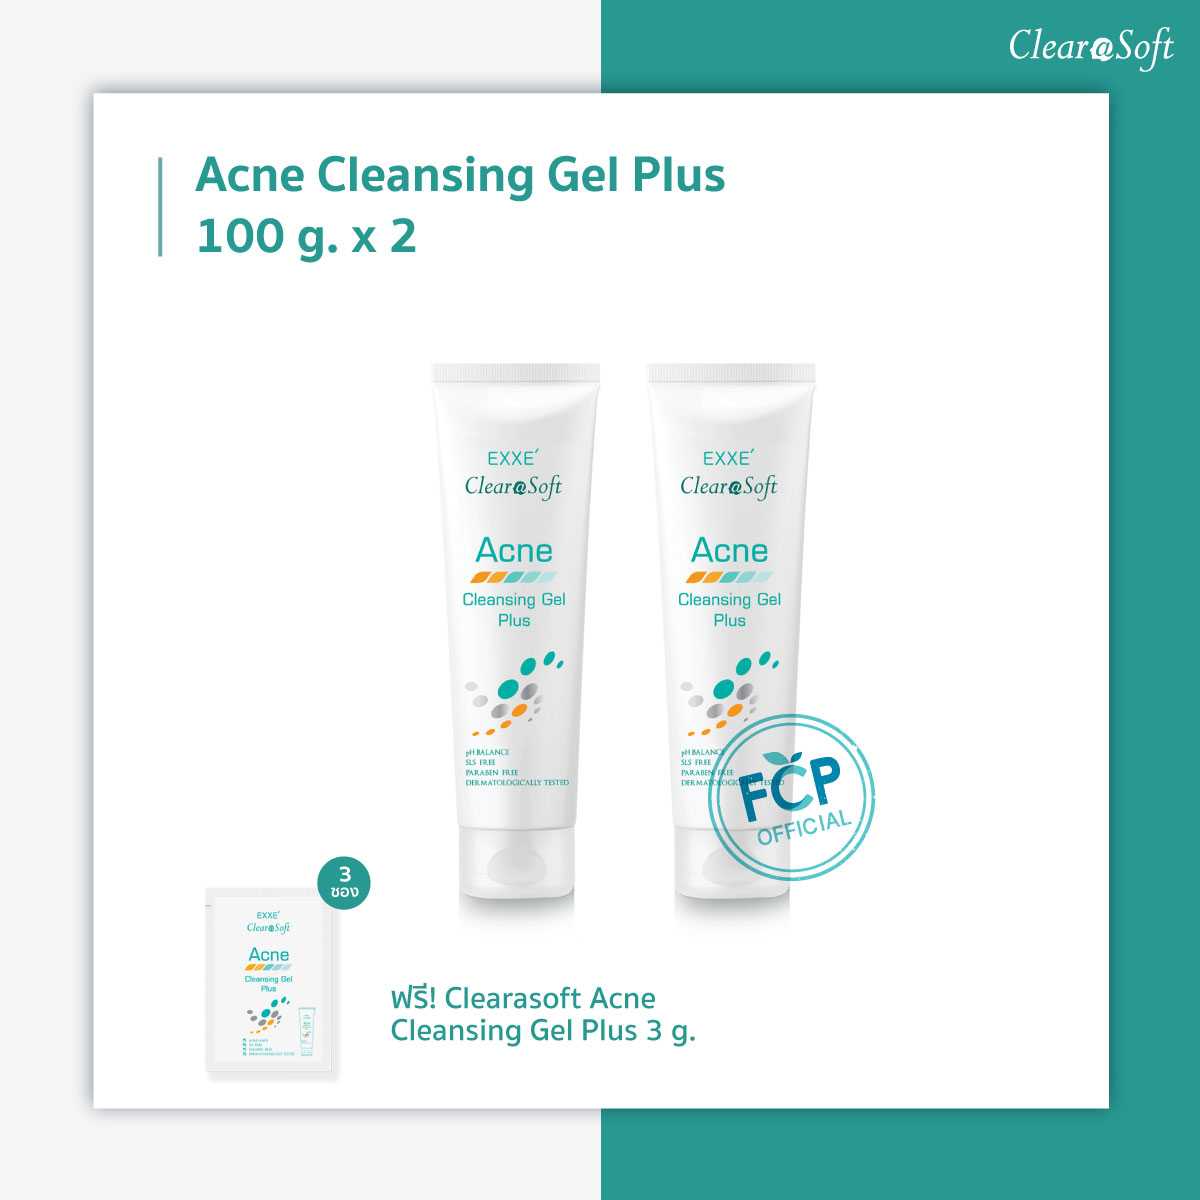 แพ็คคู่ EXXE' Clearasoft Acne Cleansing Gel Plus 2 หลอด